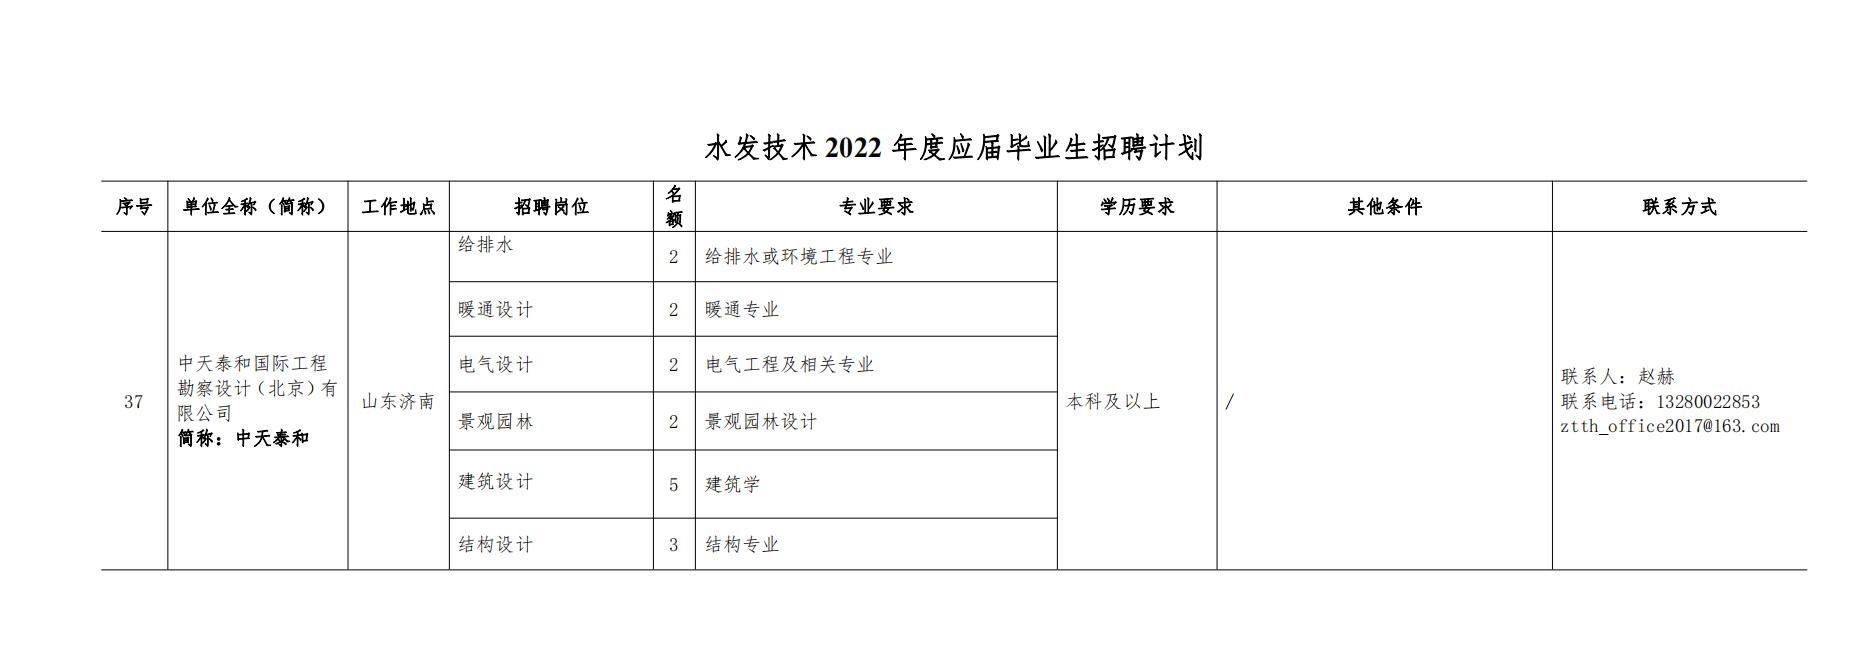 9游会技术2022年度校园招聘公告 - 副本_00.jpg